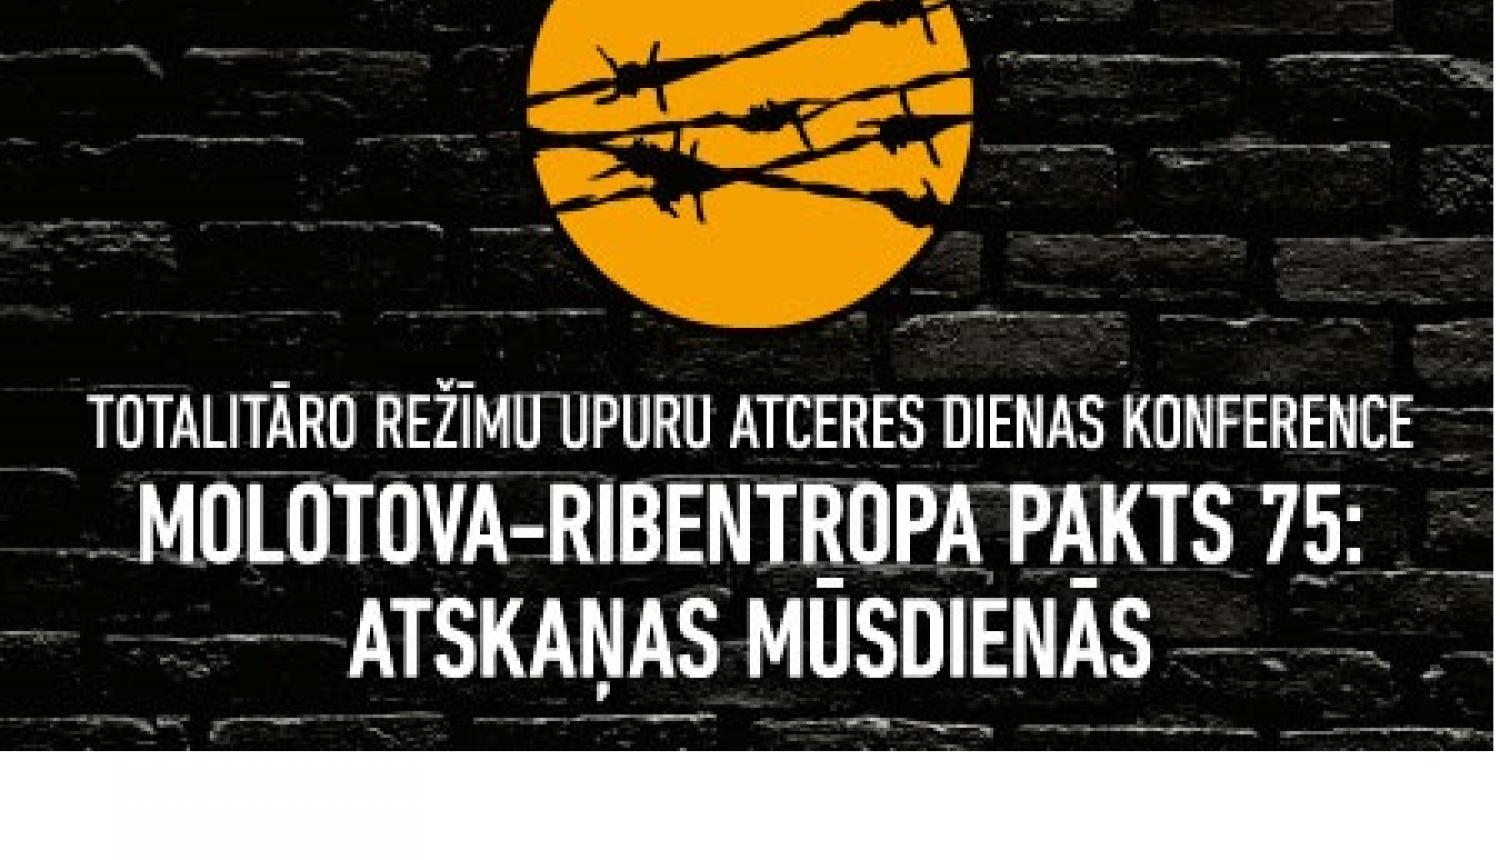 Konferenci „Molotova - Ribentropa pakts 75: atskaņas mūsdienās” varēs redzēt tiešraidē internetā